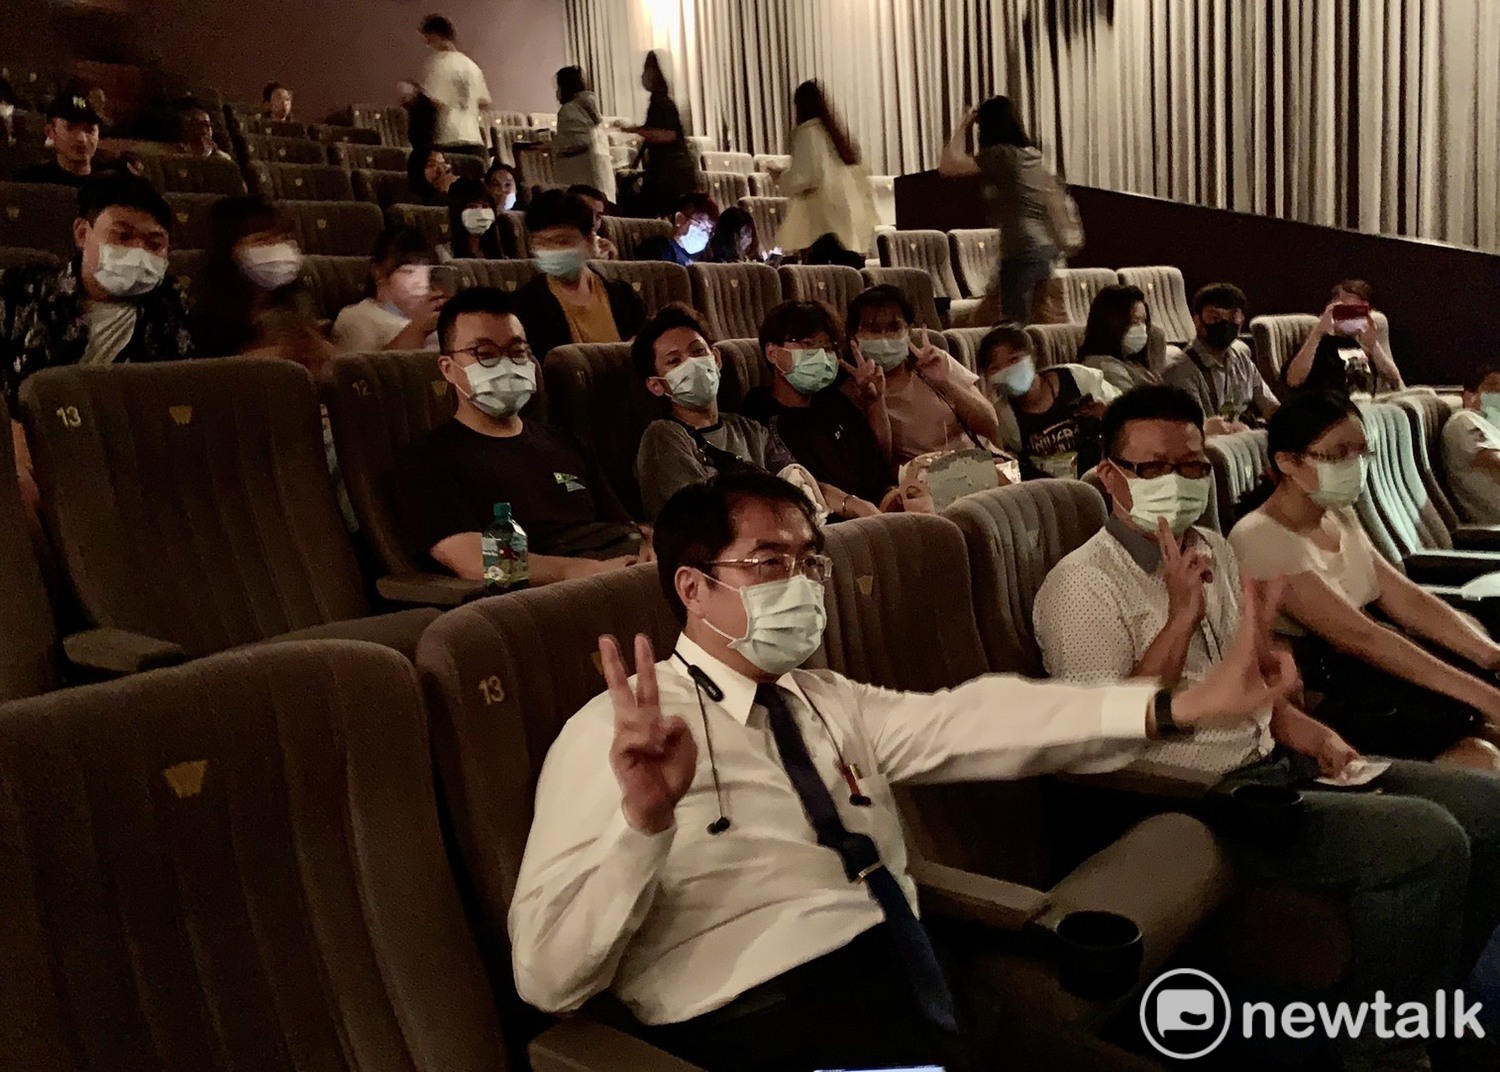 黃偉哲現身戲院觀看《無聲》 歡迎大家以行動支持國片